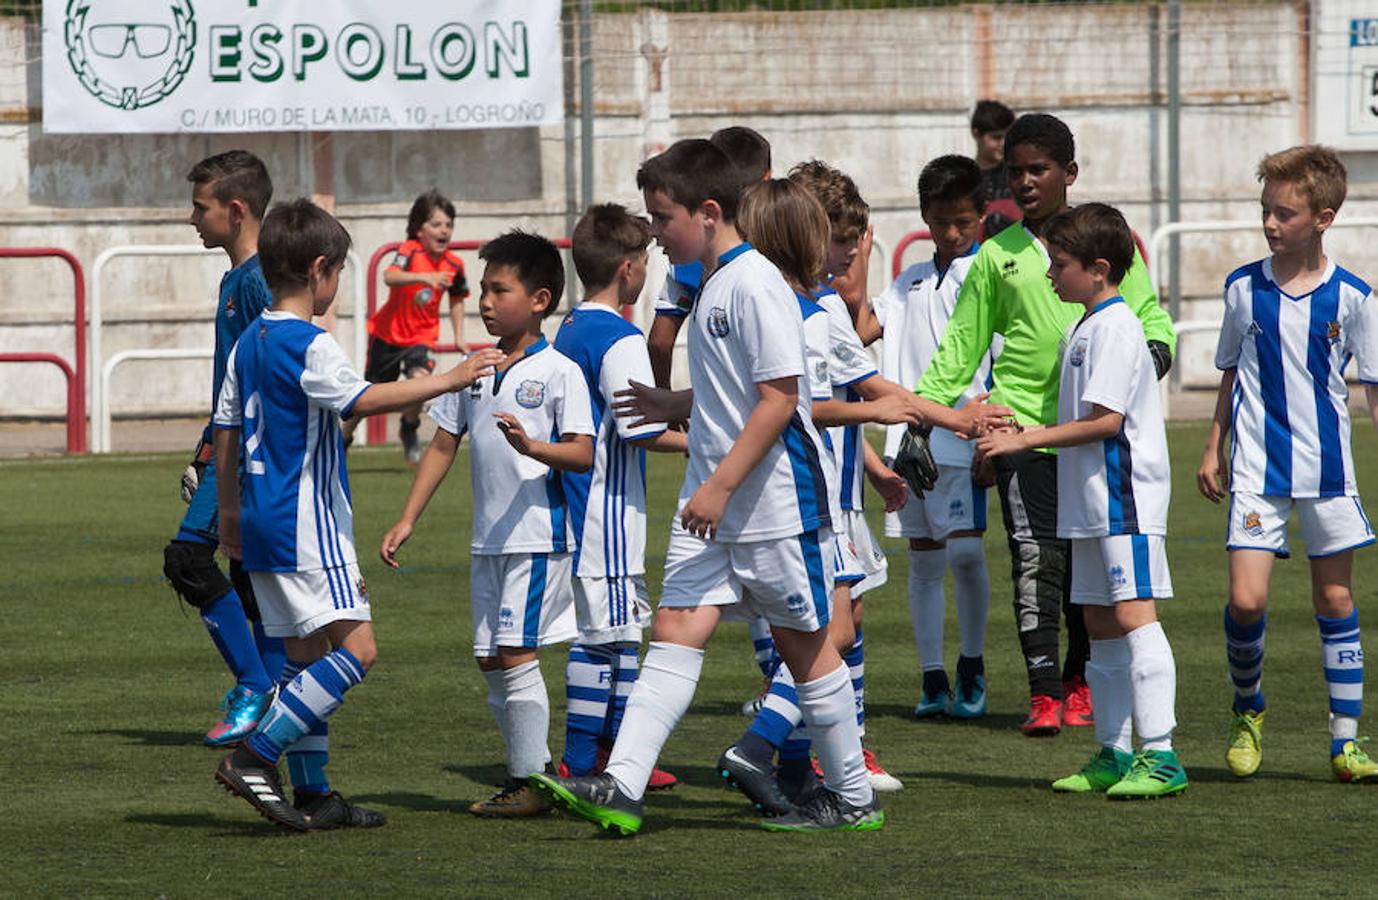 Alrededor de 500 niños de 32 equipos de fútbol 8 disputan el Torneo de fútbol benjamín (nacidos en el 2007 y 2008) que ha organizado el Varea con motivo de su 50 aniversario.